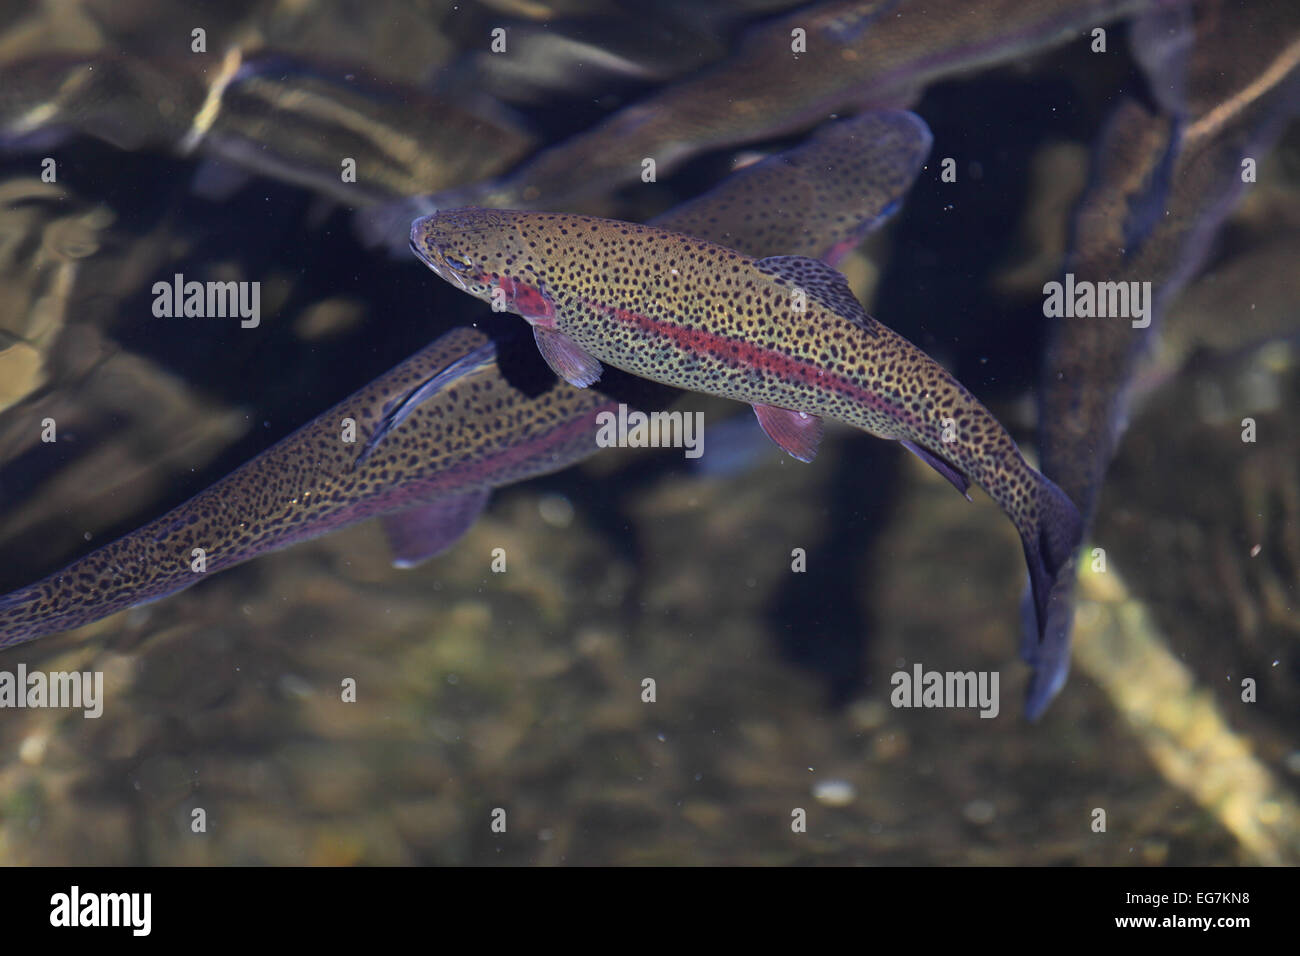 Regenbogenforellen in einer Fischzucht Teich halten. Stockfoto